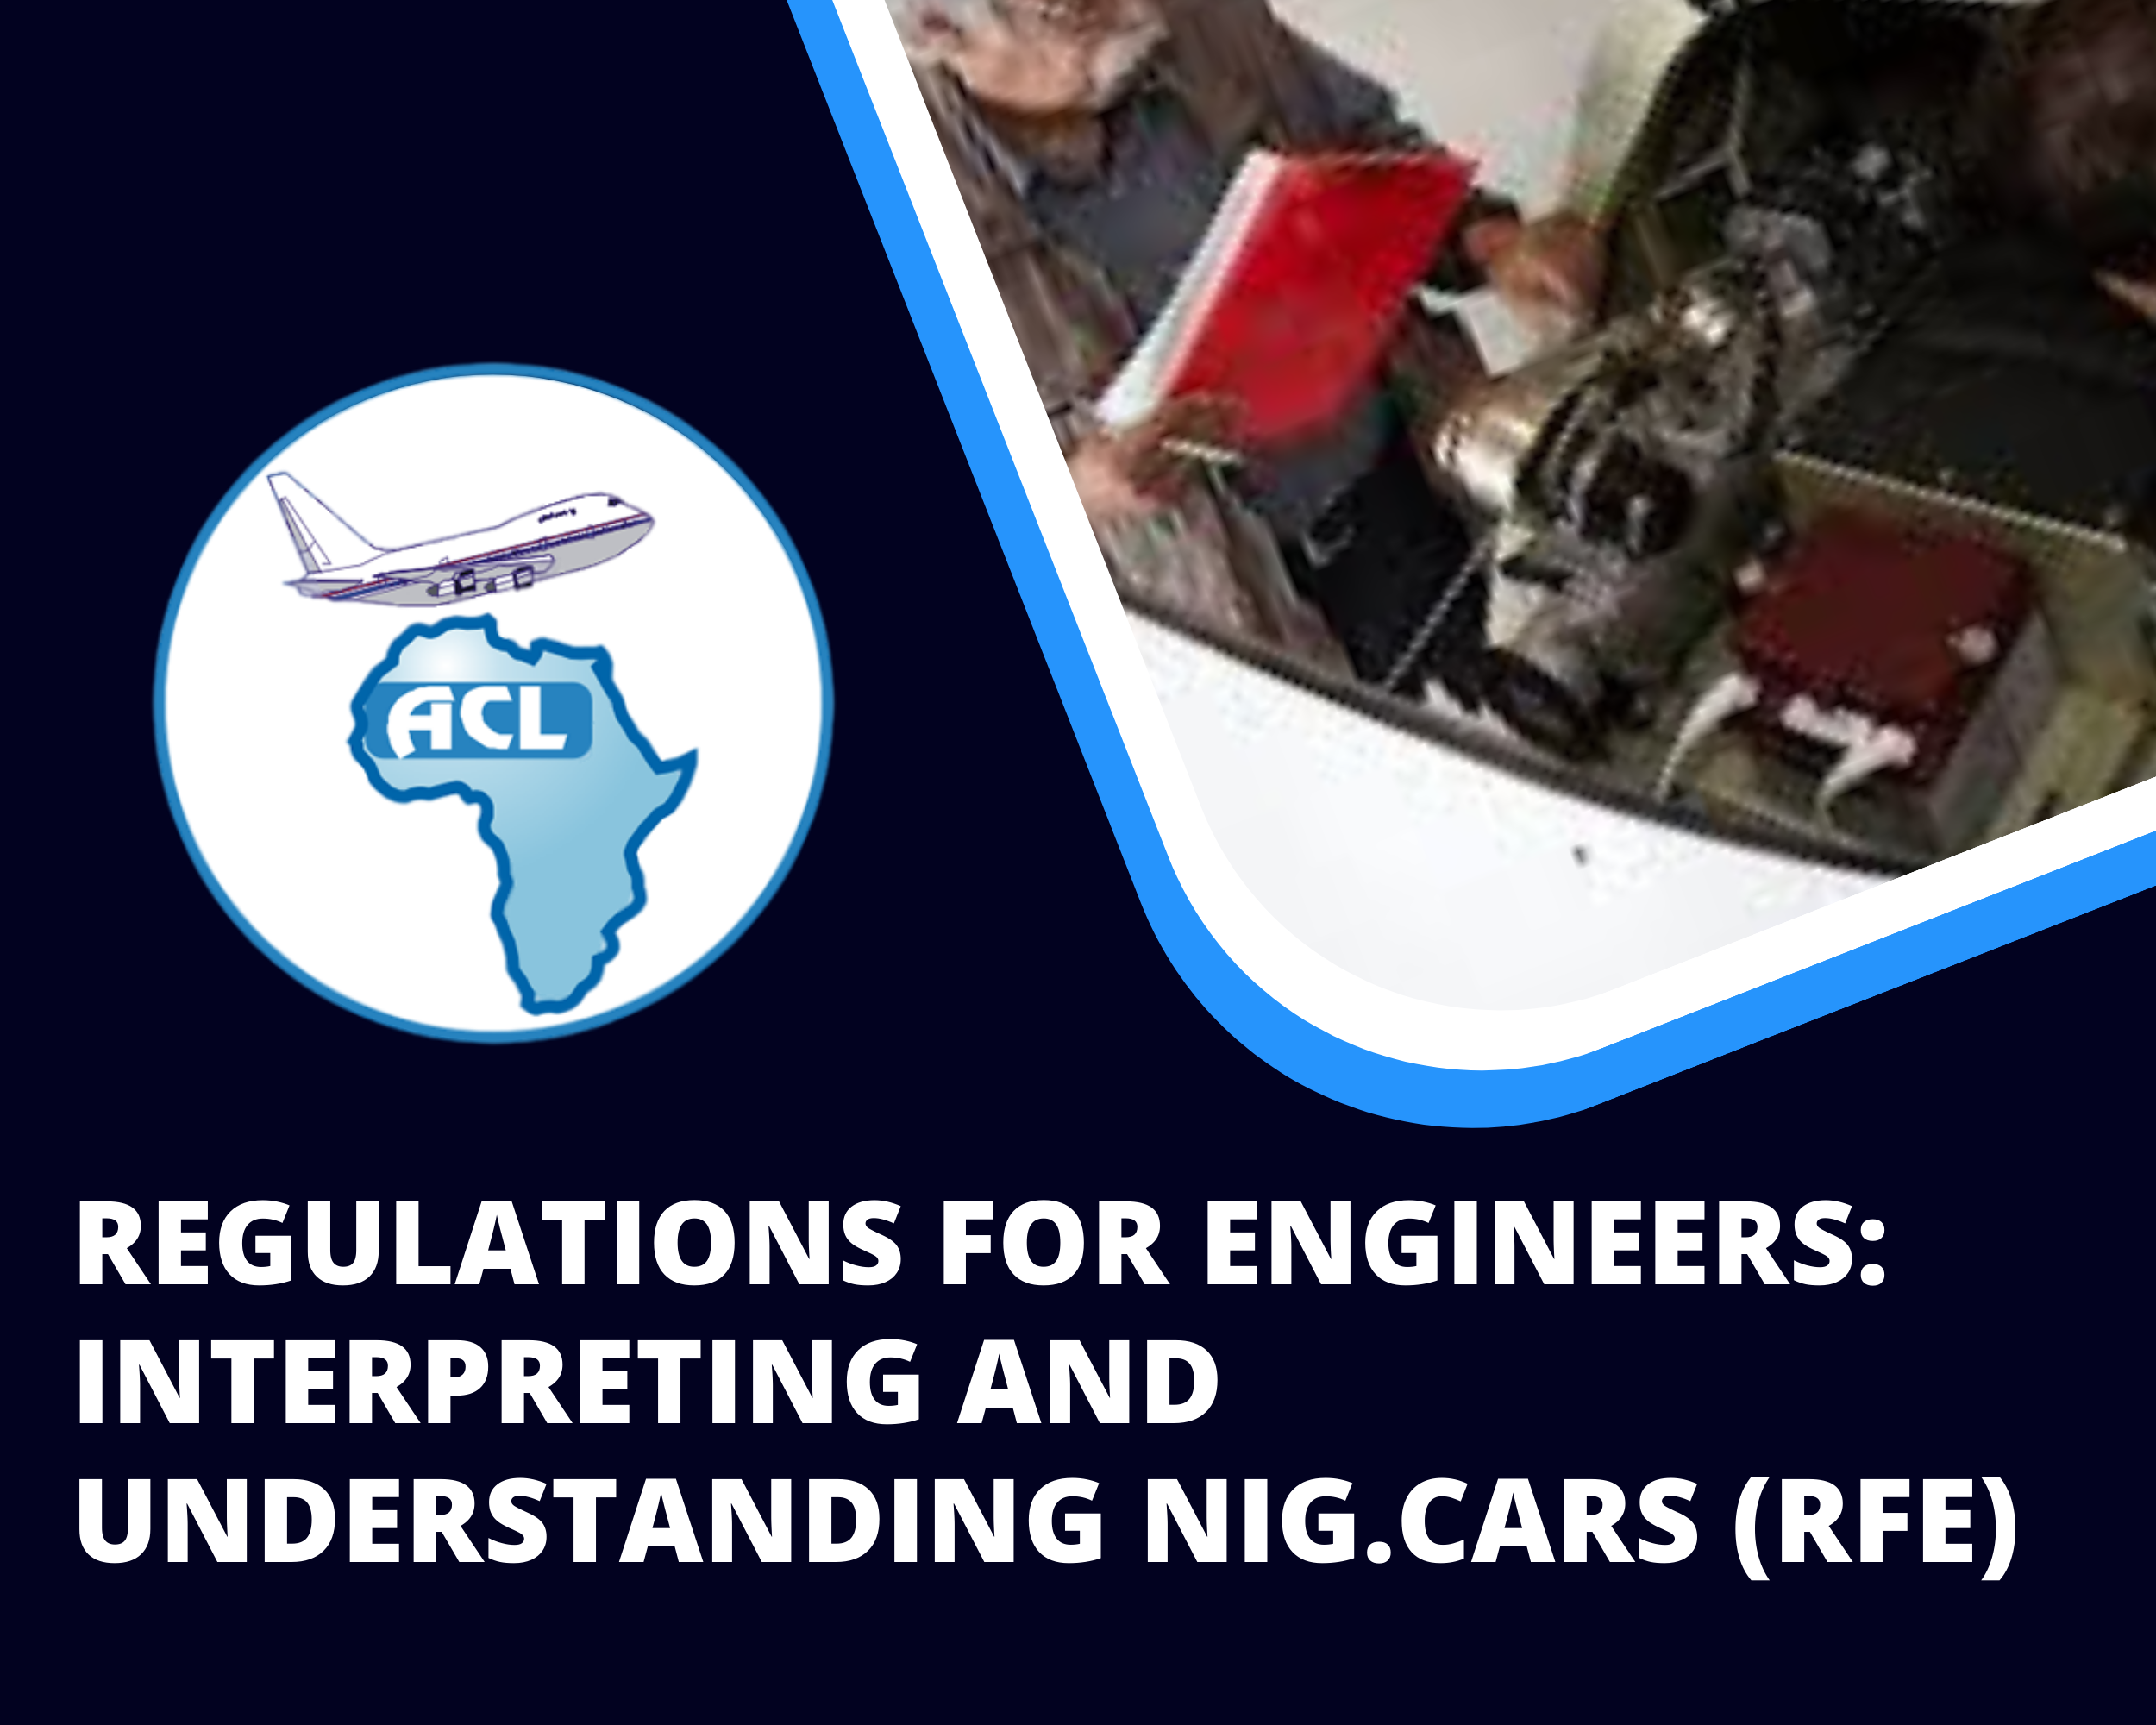 REGULATIONS FOR ENGINEERS: INTERPRETING AND UNDERSTANDING NIG.CARS (RFE)